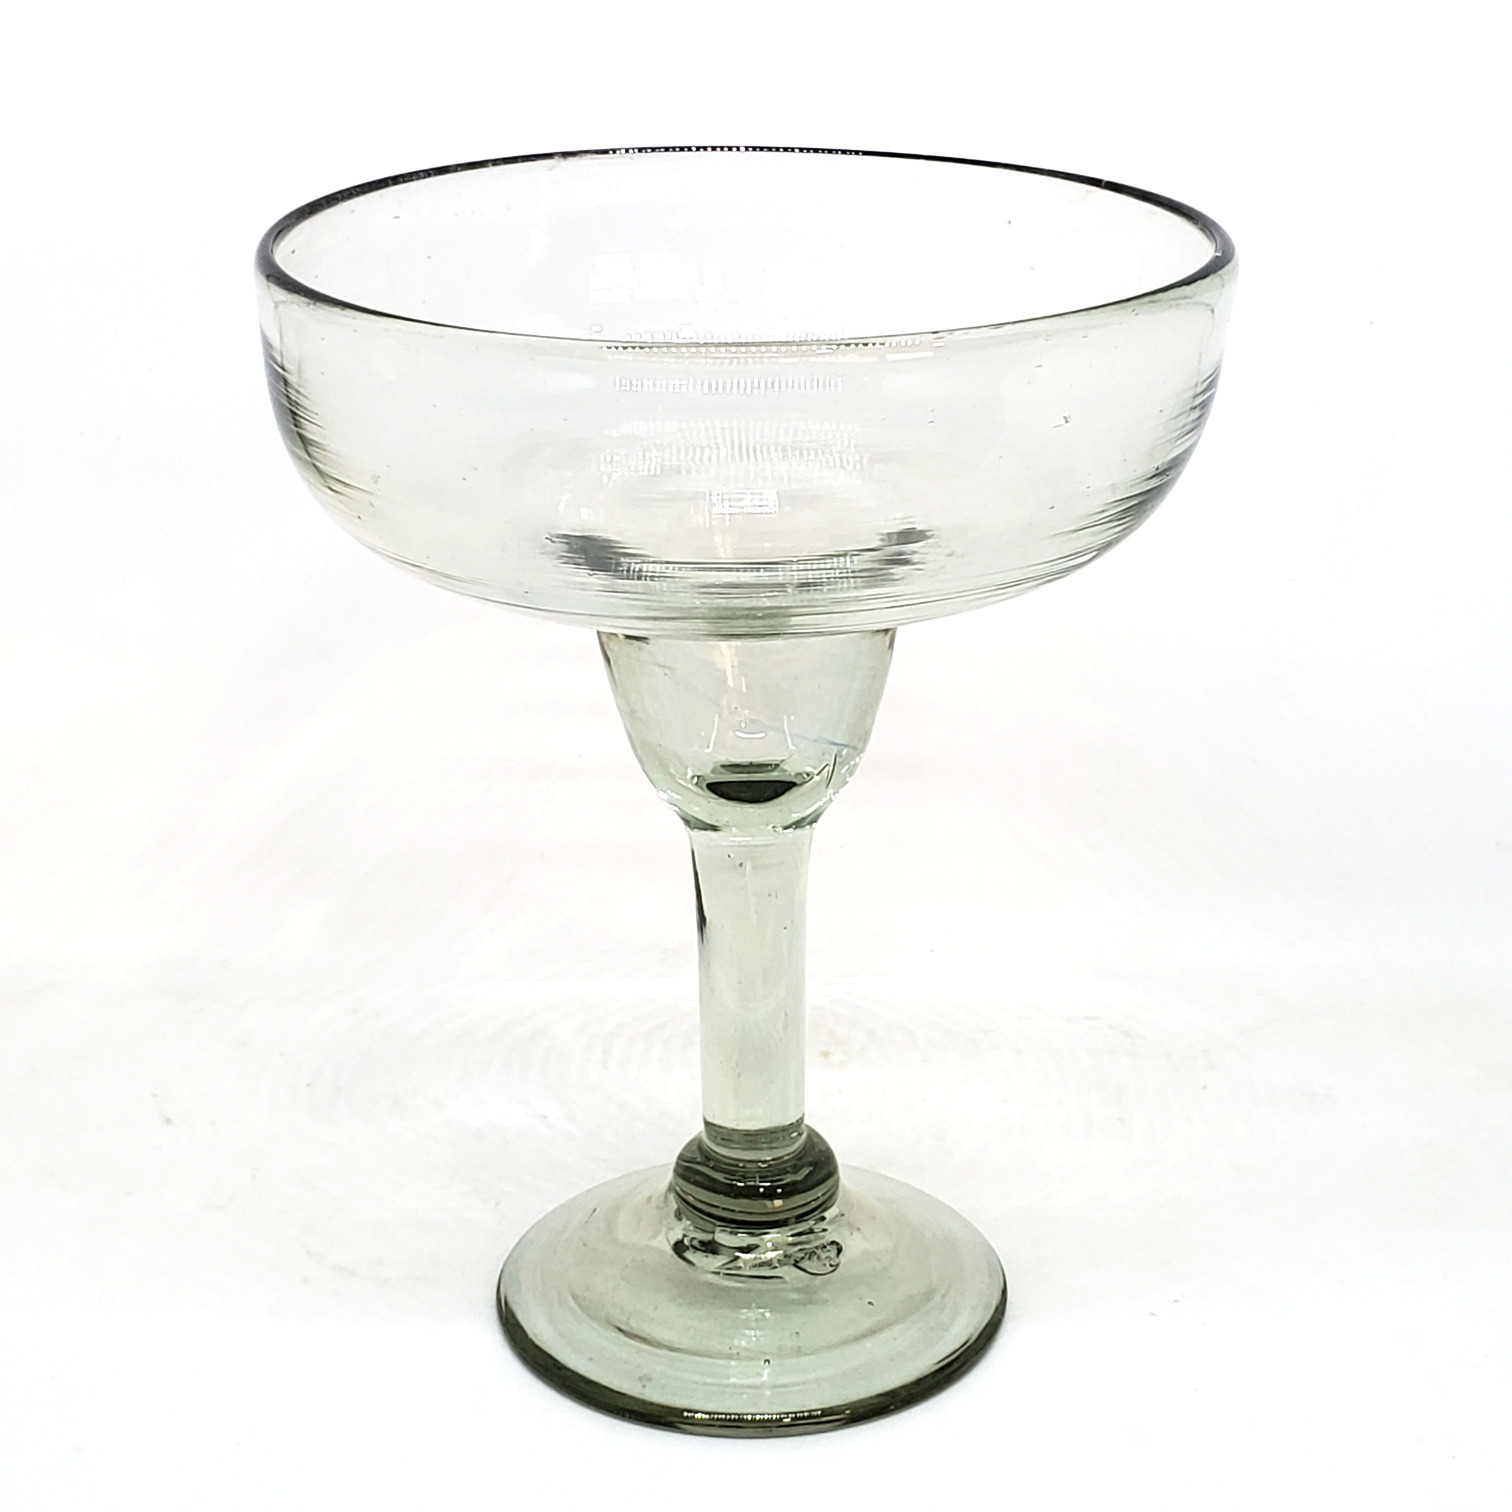 Novedades / Copa Margarita Grande 14 oz Transparente (Juego de 4) / Para cualquier fanático de las margaritas, éste juego de copas de vidrio soplado resaltarán en su mesa.